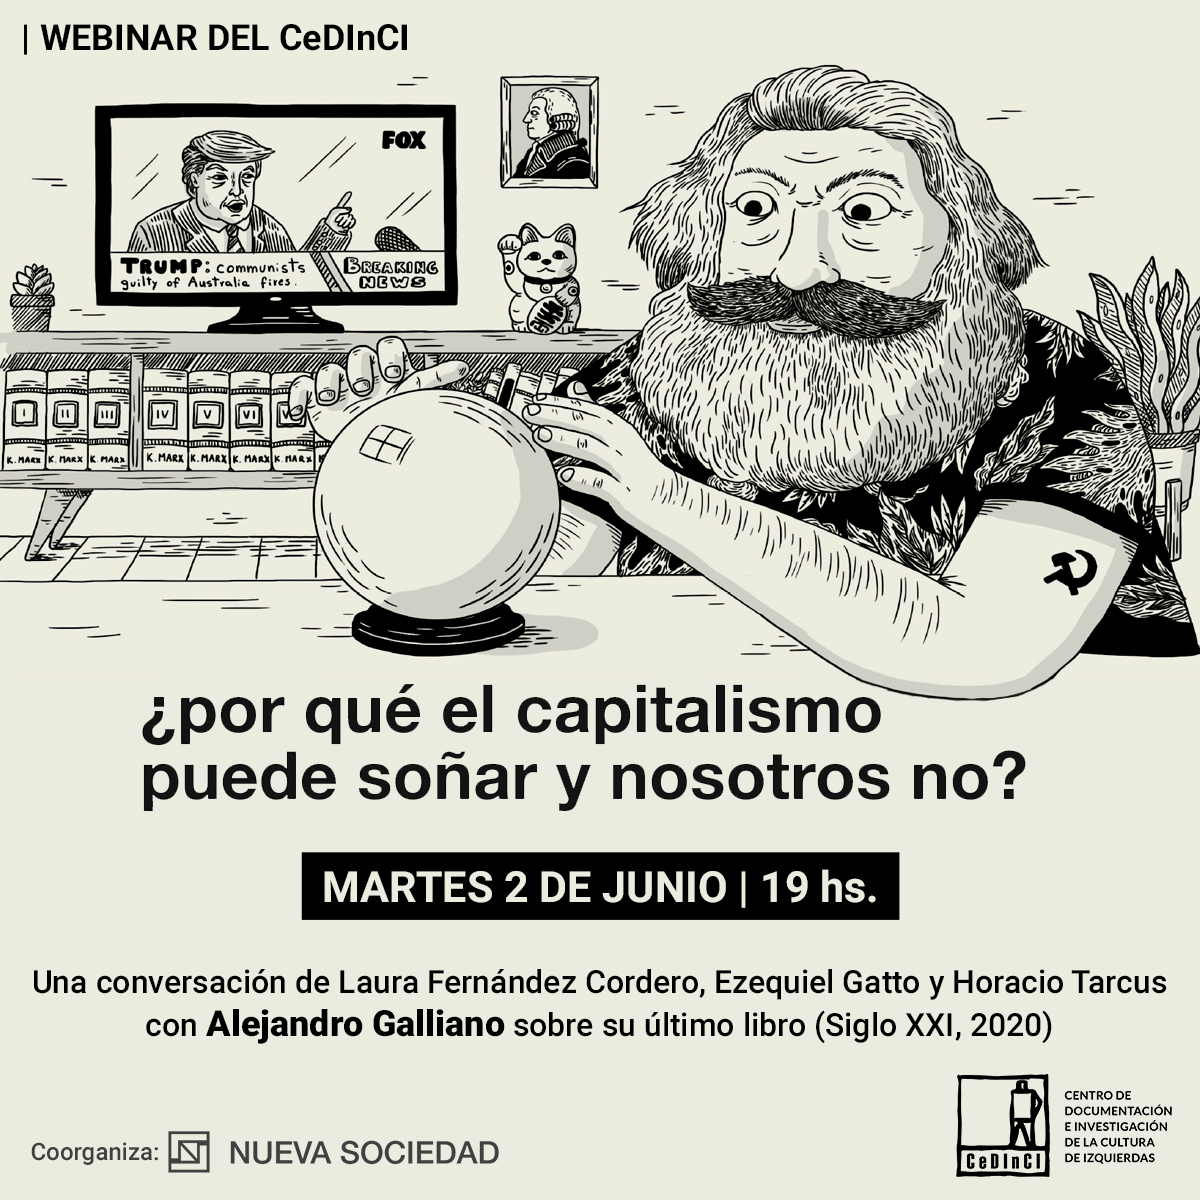 Por qué el capitalismo puede soñar y nosotros no? el próximo webinar del CeDInCI